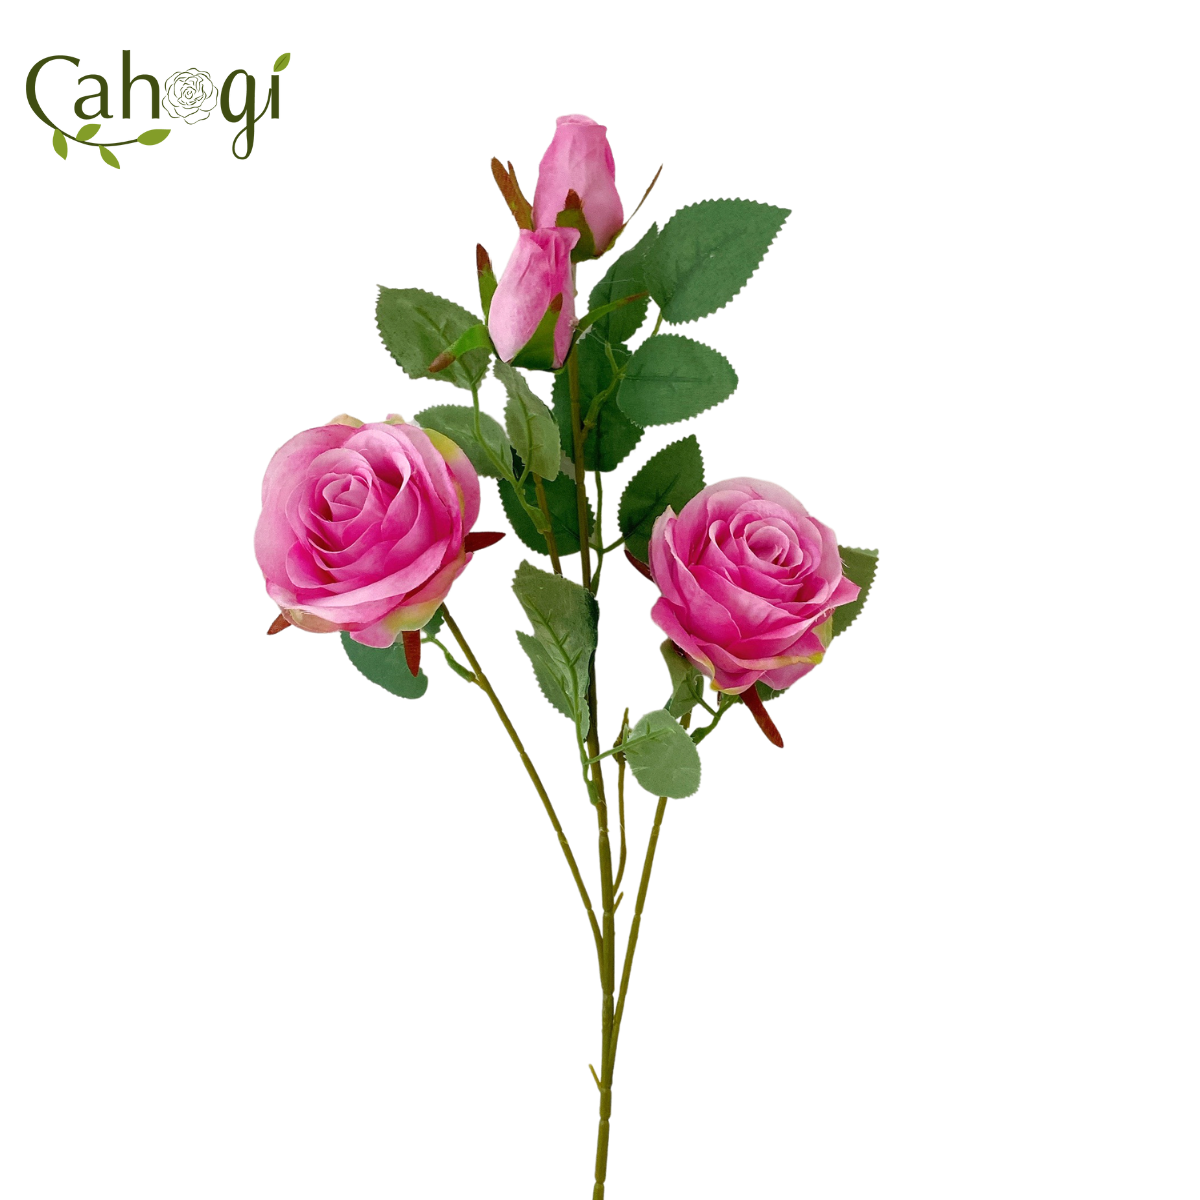 Hình ảnh hoa giả, hoa hồng cành lớn sẽ khiến bạn chú ý ngay từ cái nhìn đầu tiên với sự trang trí tinh tế và tạm biệt những khó khăn của việc chăm sóc. Hãy tận hưởng vẻ đẹp hoàn hảo và không còn lo lắng về việc hoa của bạn có ra hoa hay không.